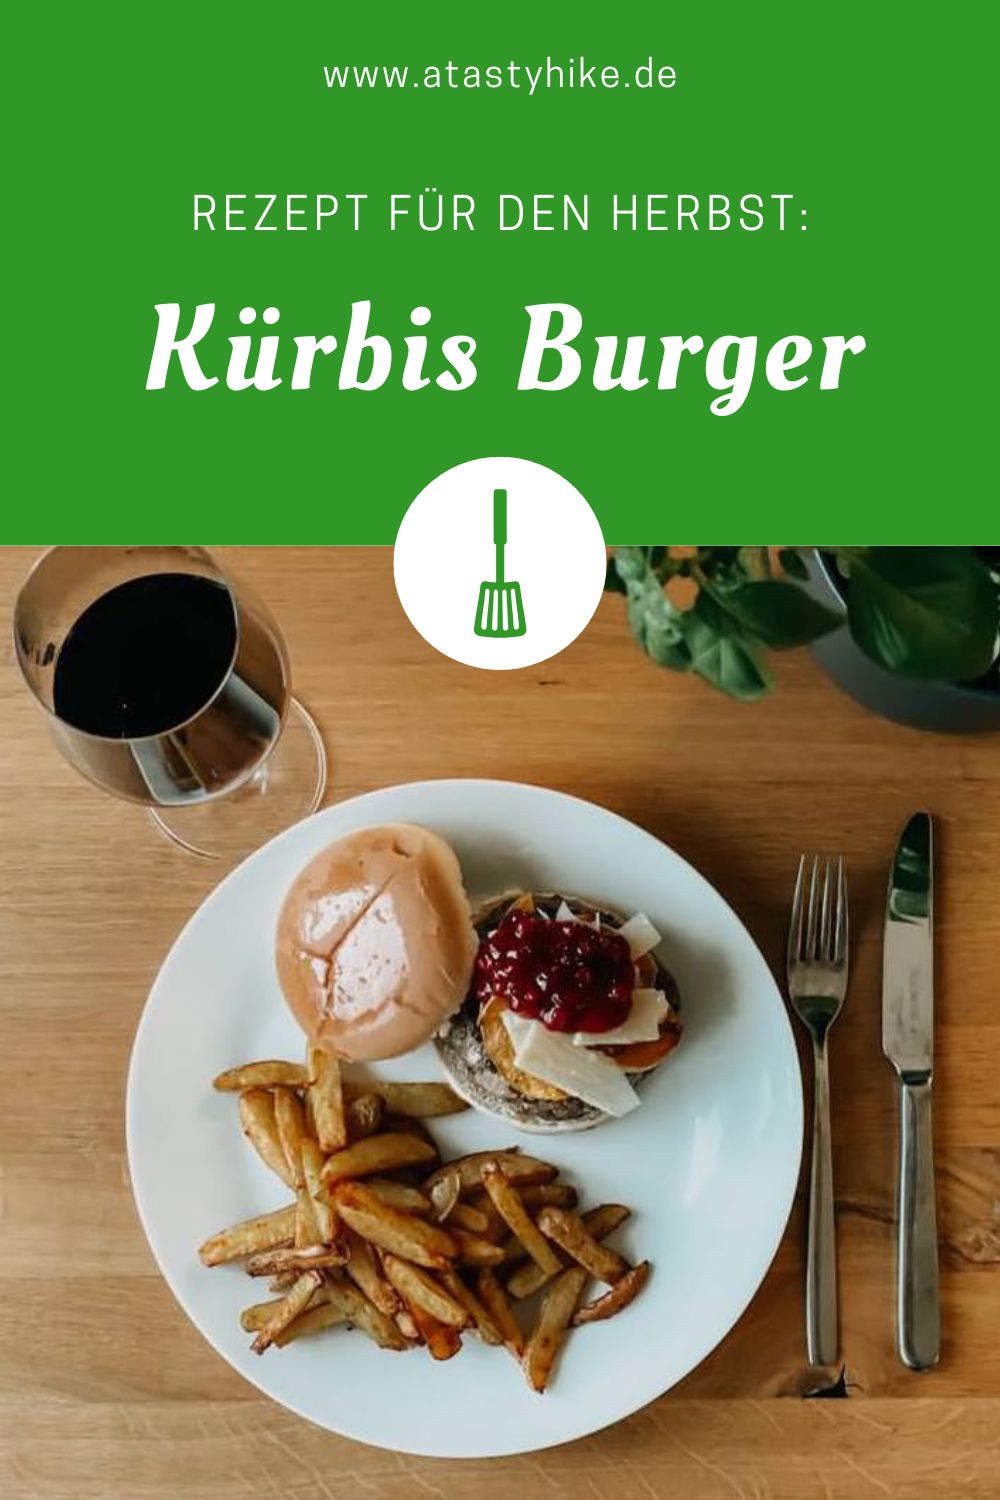 Leckeres Kürbis Burger Rezept – Perfekt für den Herbst und Kürbisliebhaber. Das ganze rezept für den Kürbisburger findest du jetzt zum Nachkochen auf dem A Tasty Hike Blog. #ATastyHike